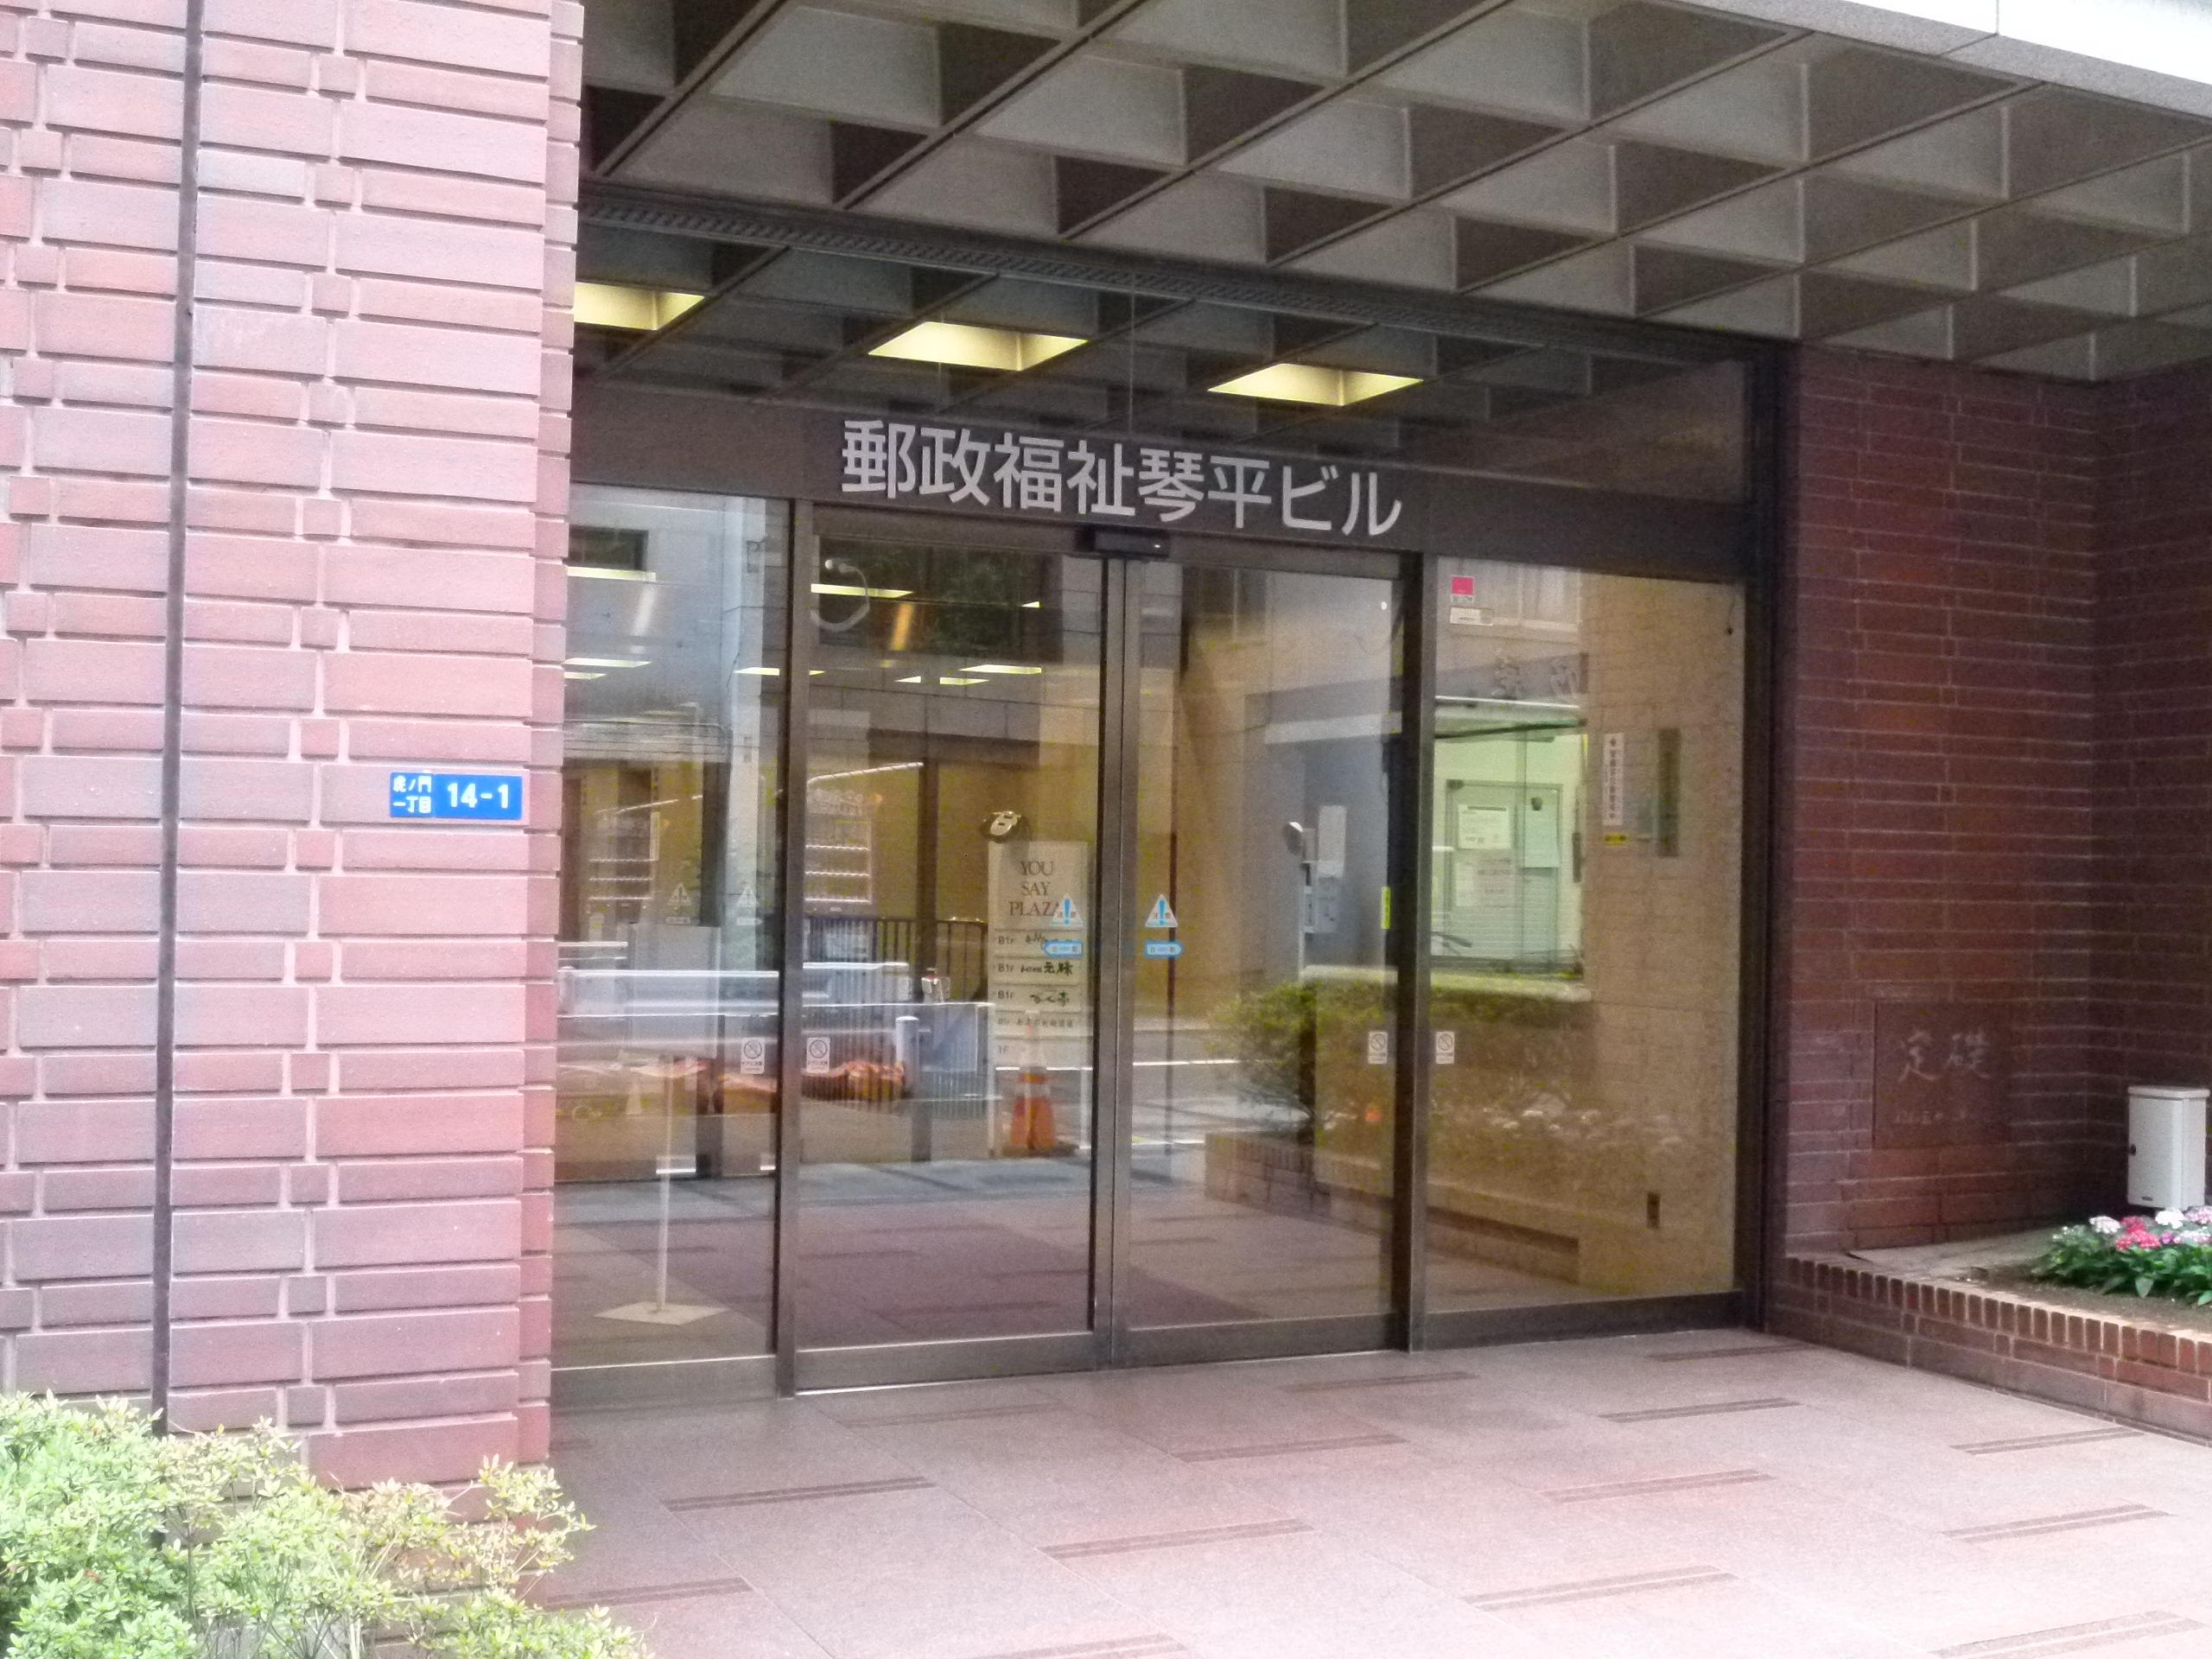 福岡大学東京事務所の移転について ニュース 福岡大学